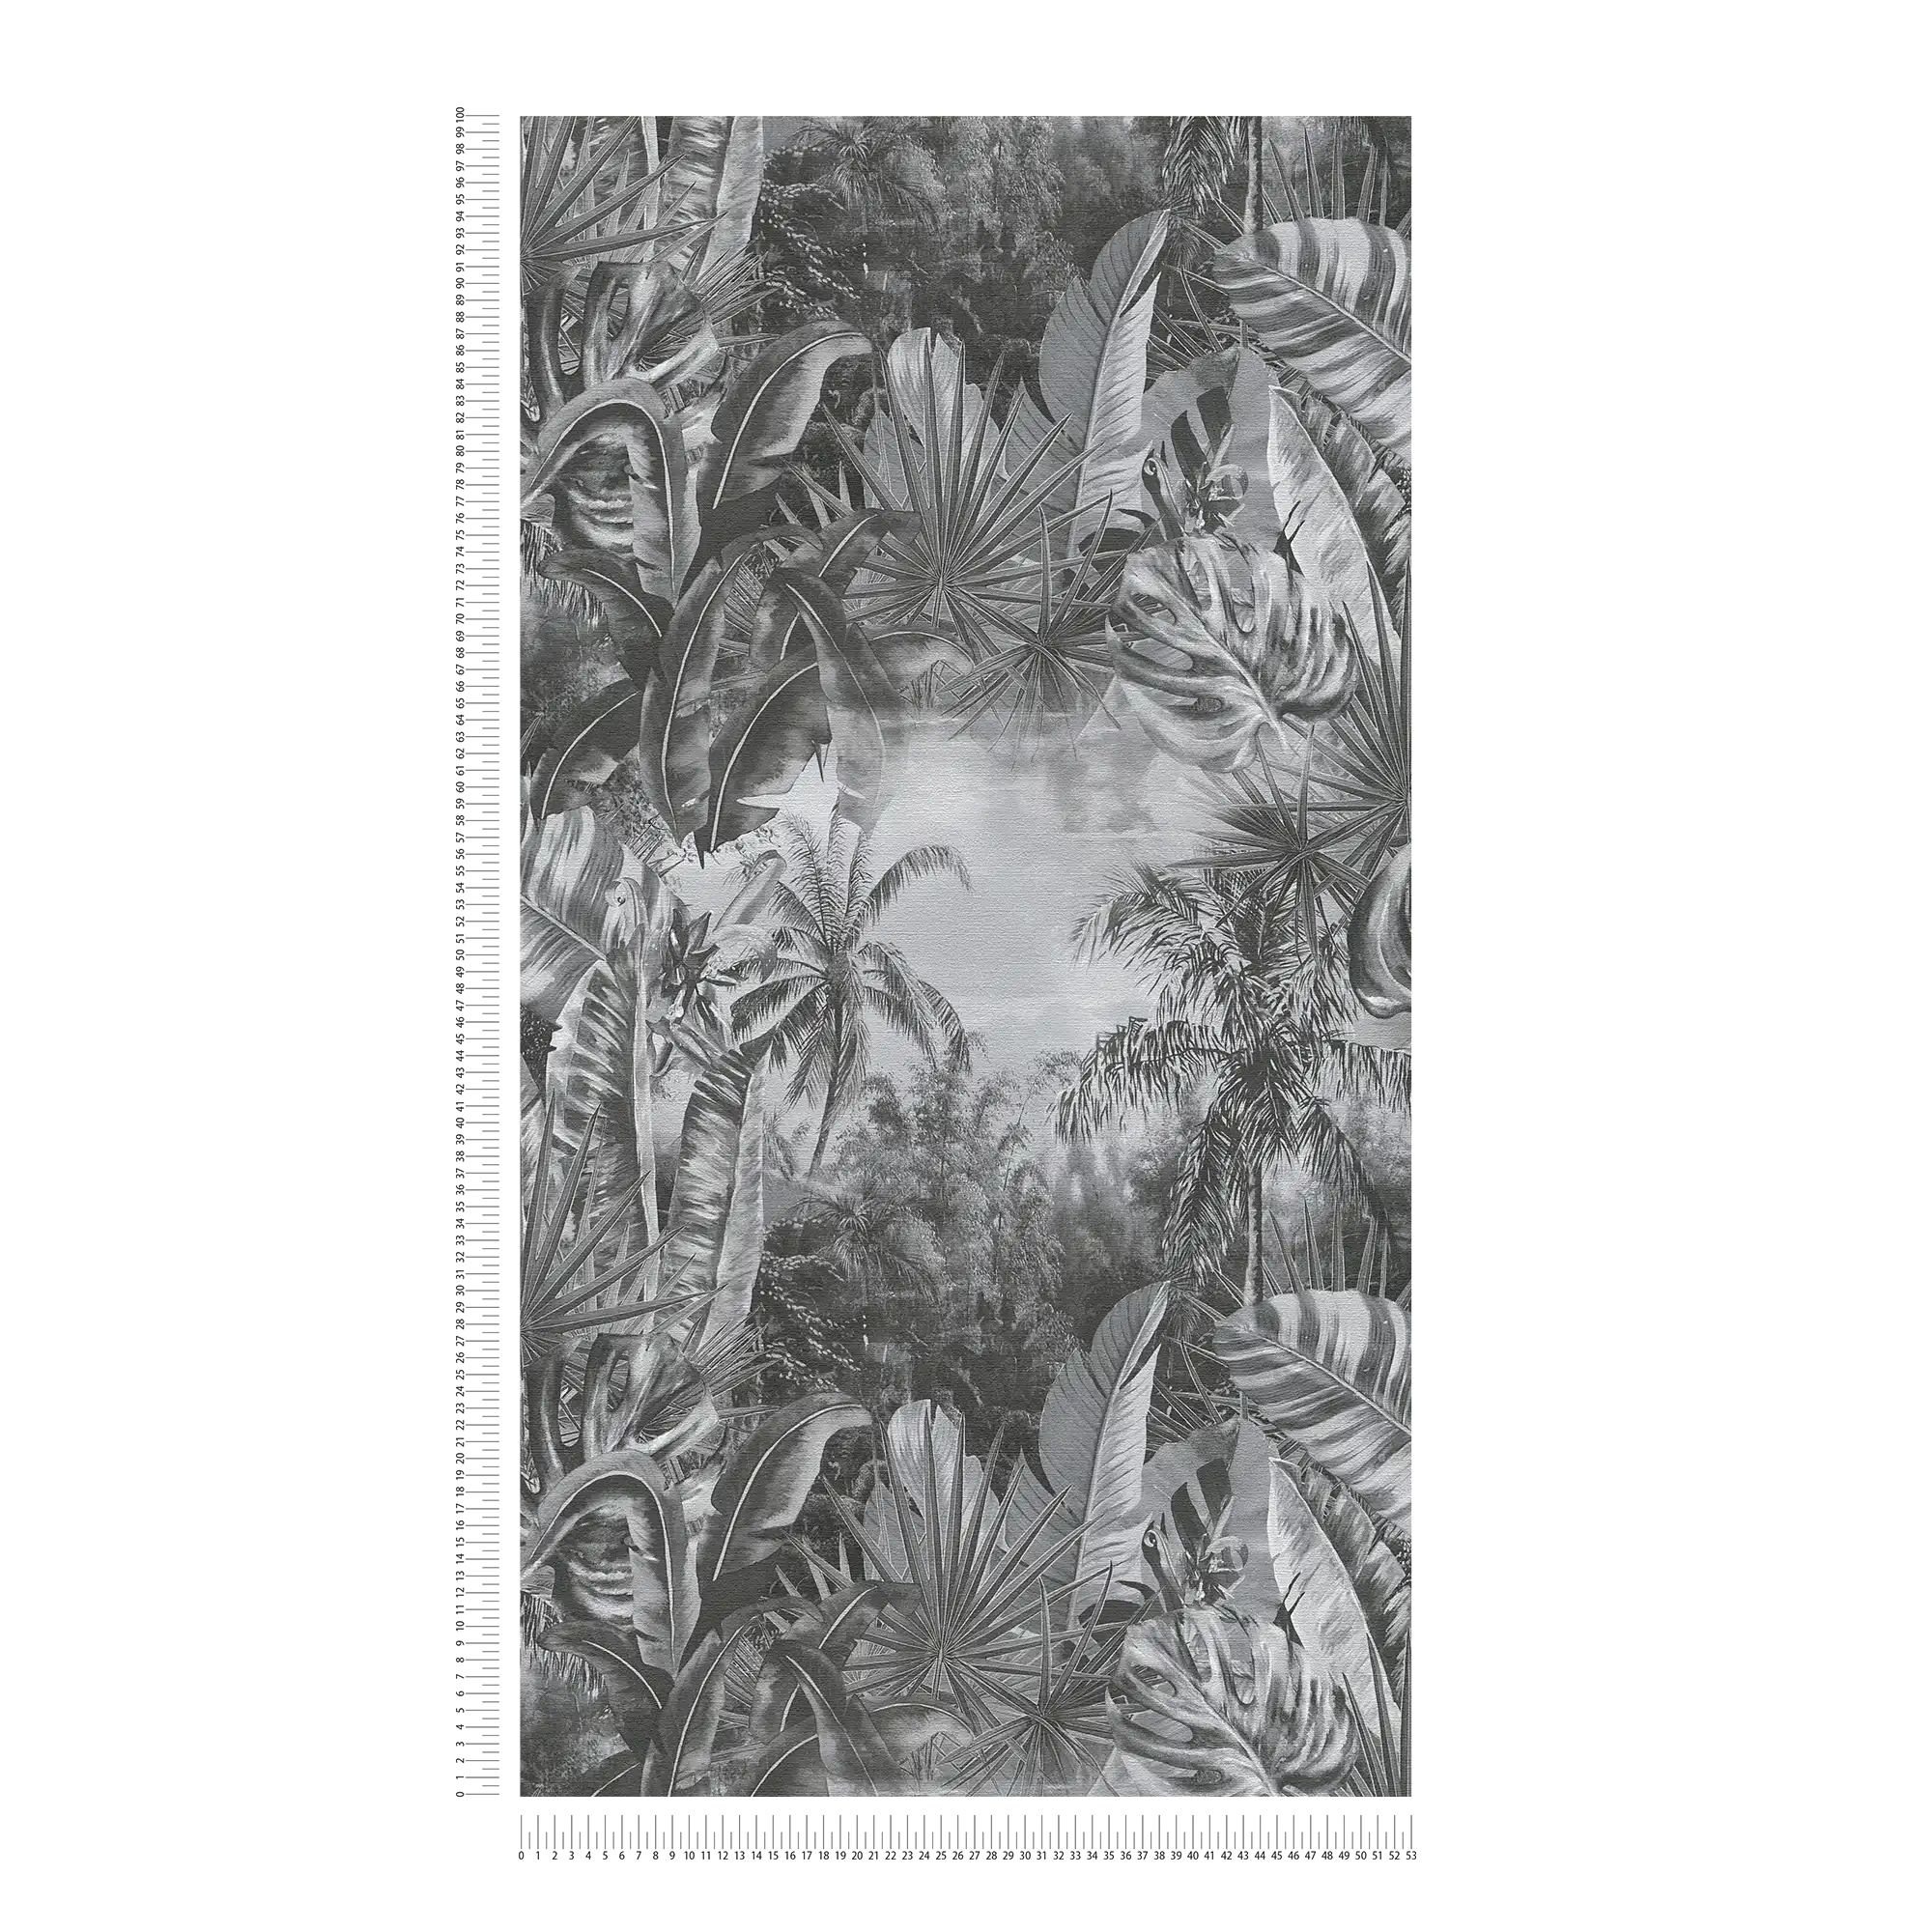             Schwarz-Weiß Tapete Dschungel Muster mit Palmen
        